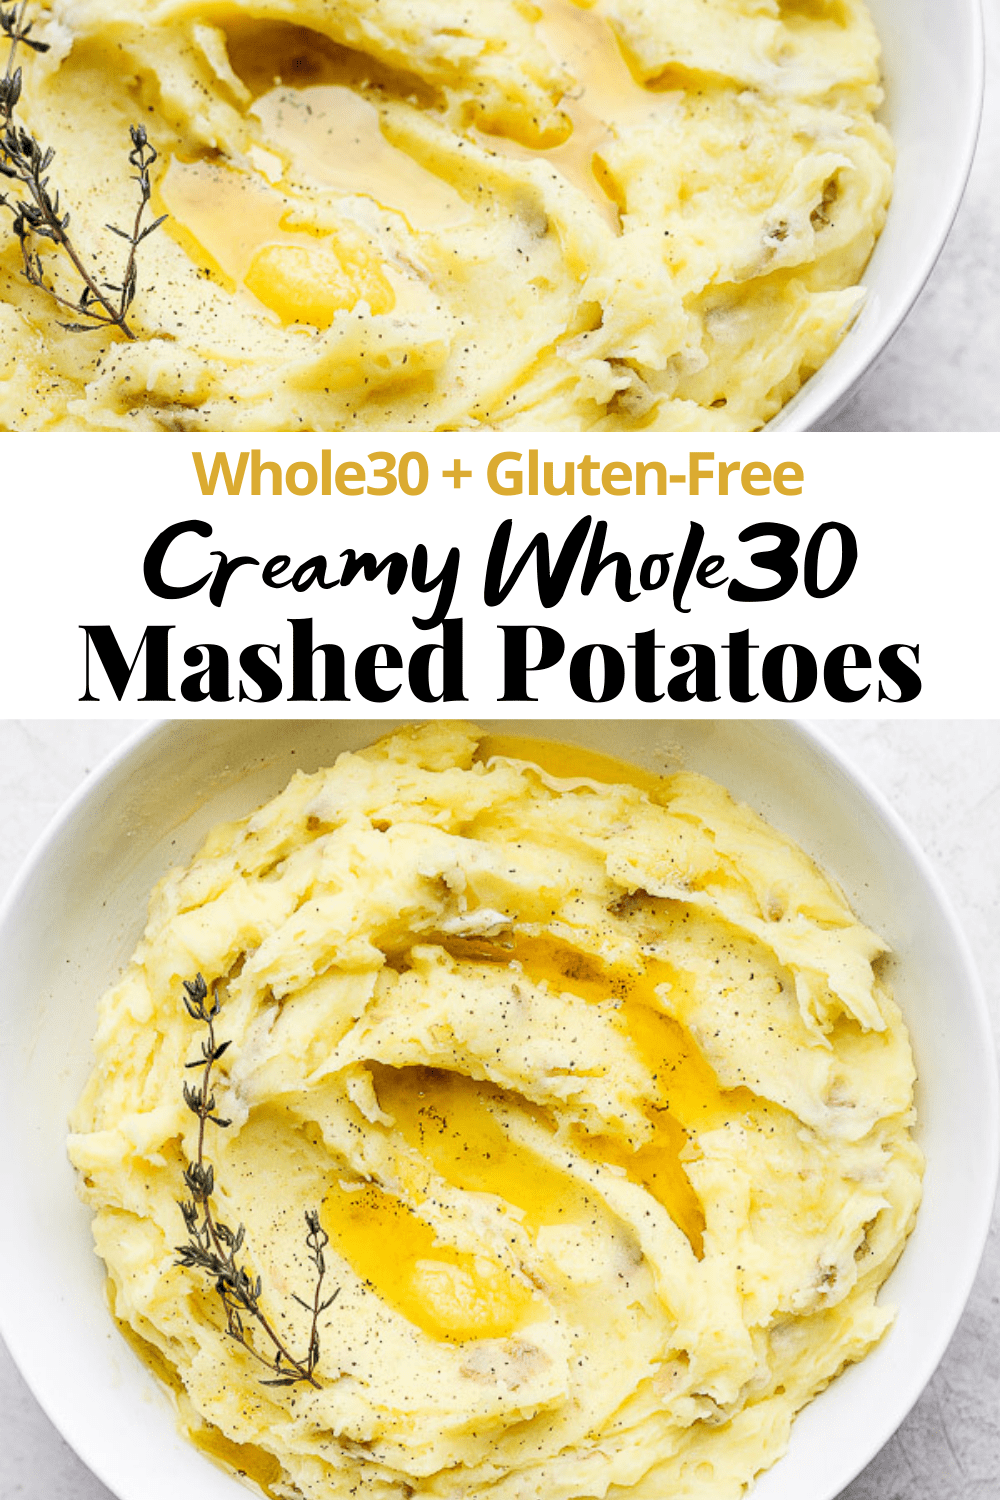 Pinterest image for creamy whole30 mashed potatoes.